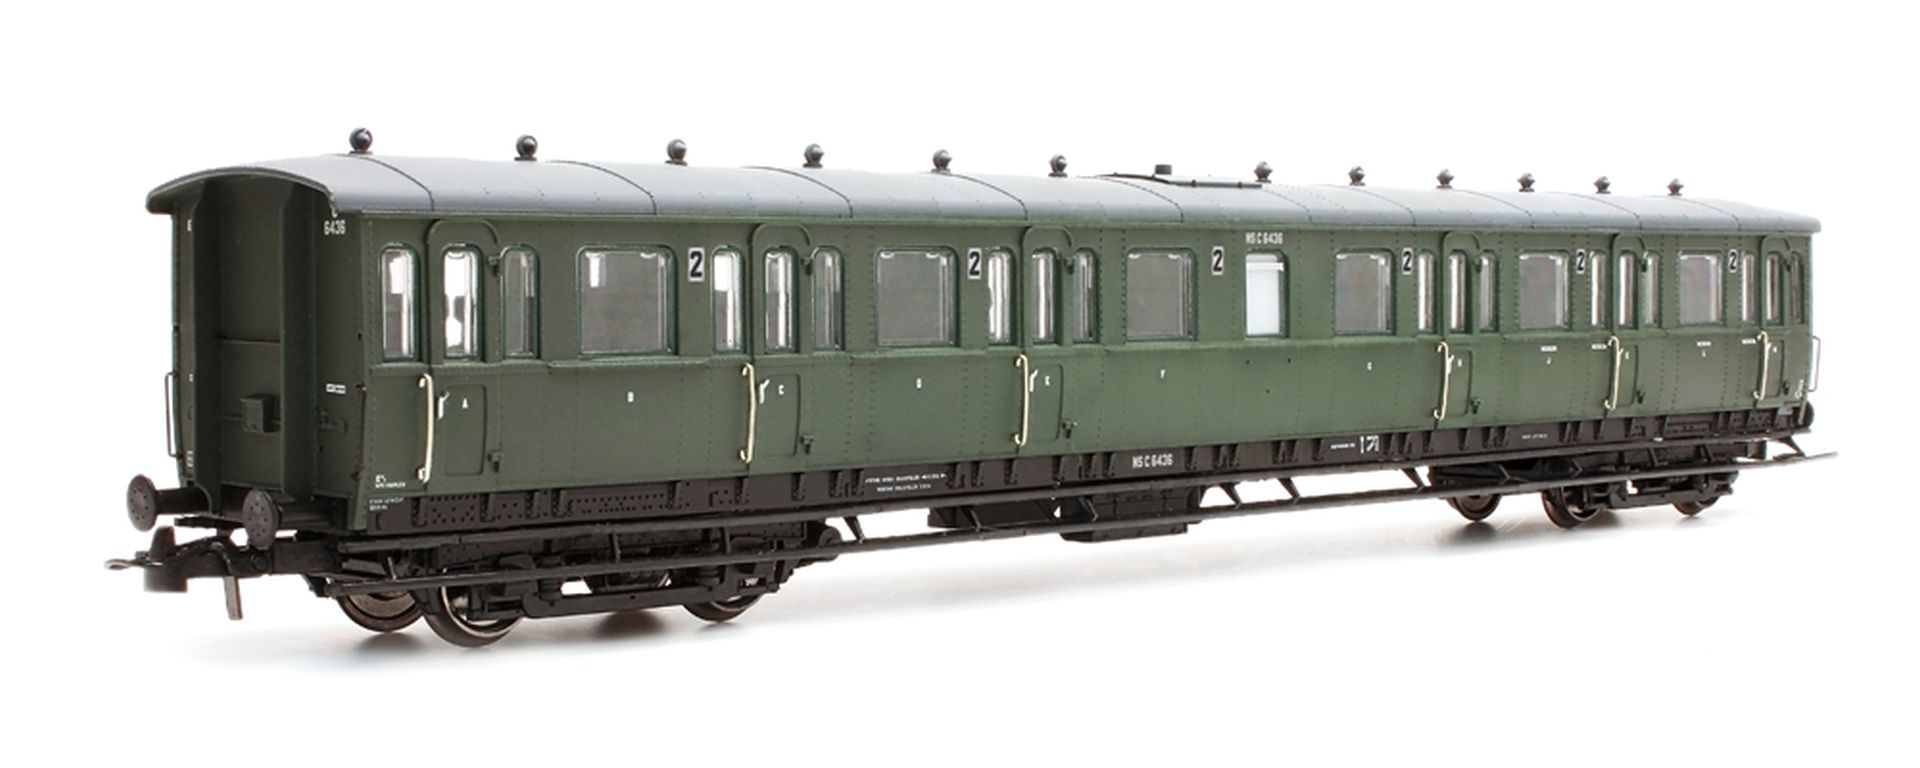 Artitec 20.254.09 - Personenwagen C12c C6460, 3. Klasse, NS, Ep.III